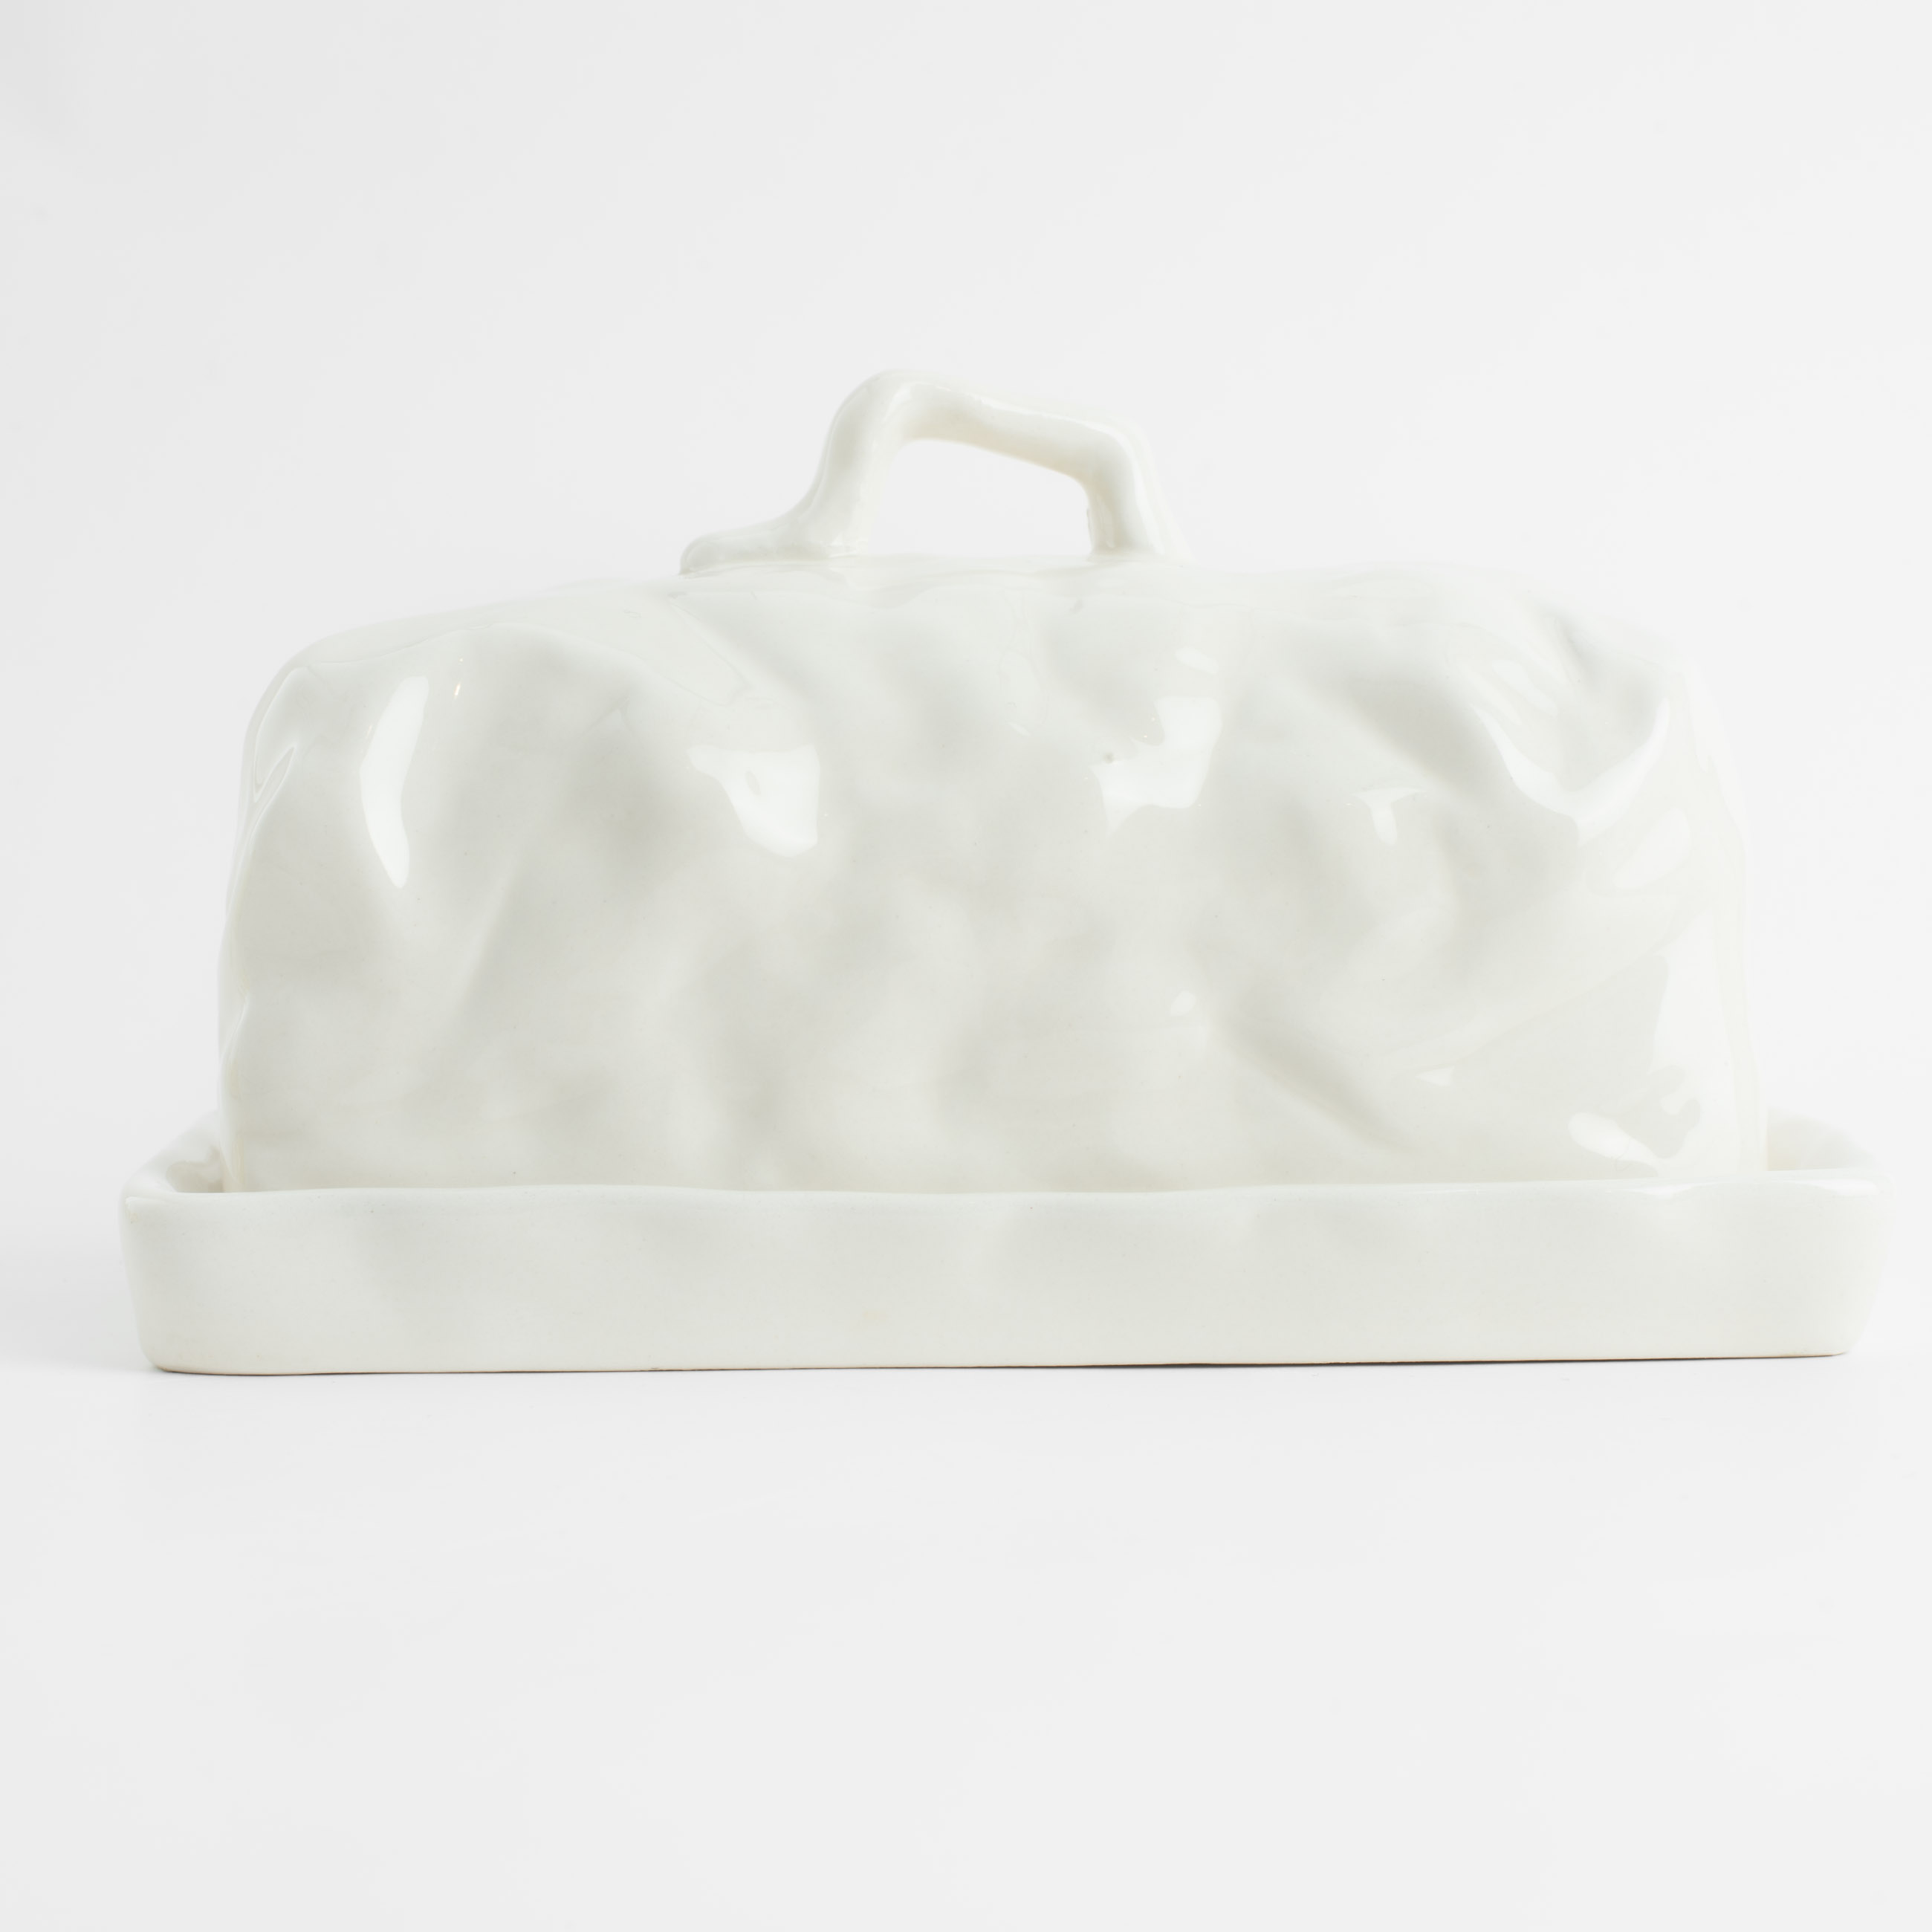 Масленка, 18 см, керамика, прямоугольная, молочная, Мятый эффект, Crumple изображение № 3